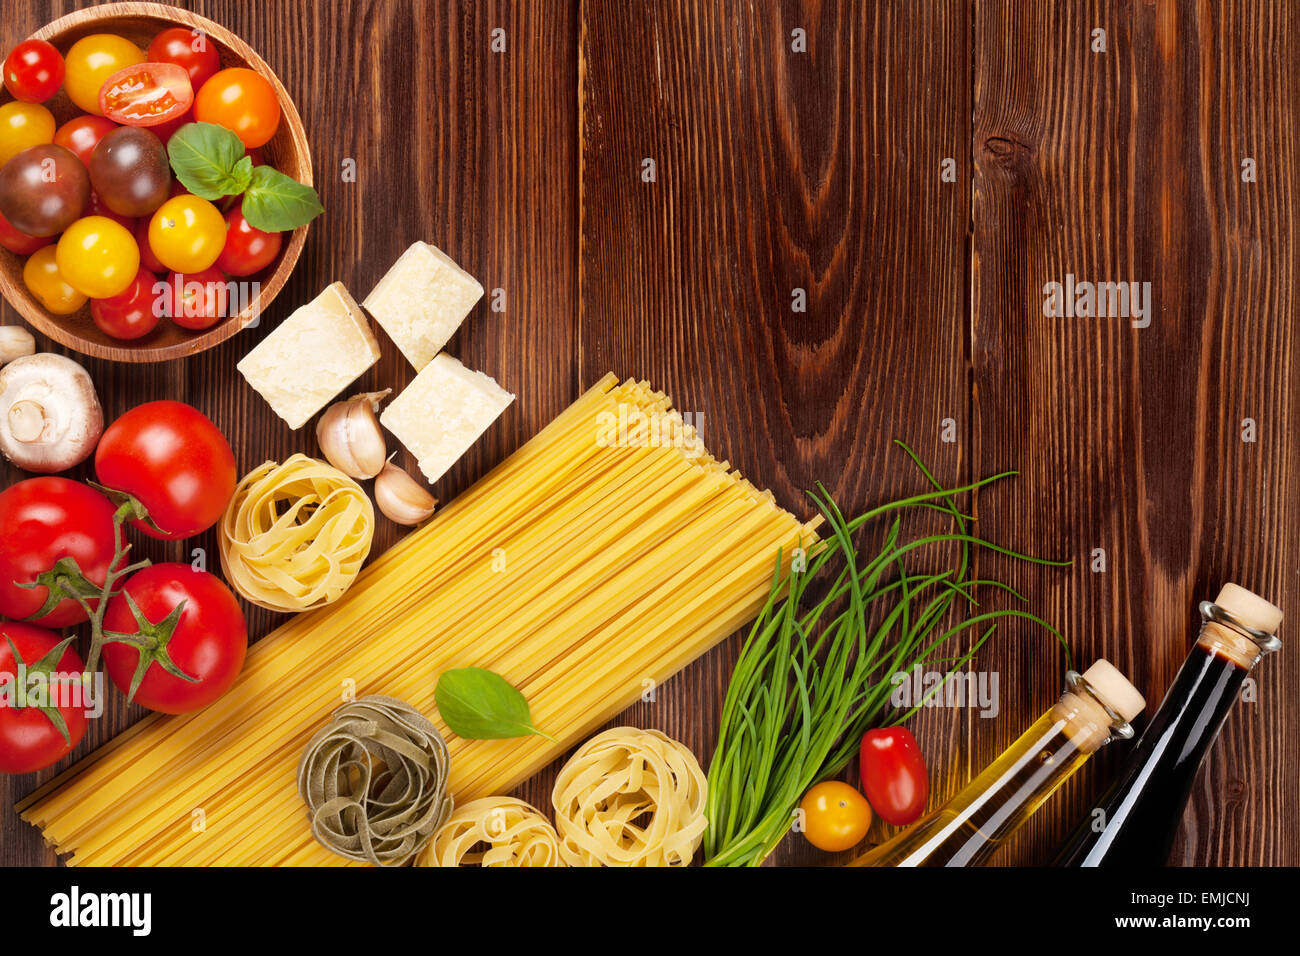 Ingrédients de cuisine italienne. Les pâtes, les tomates, le basilic. Top View with copy space Banque D'Images